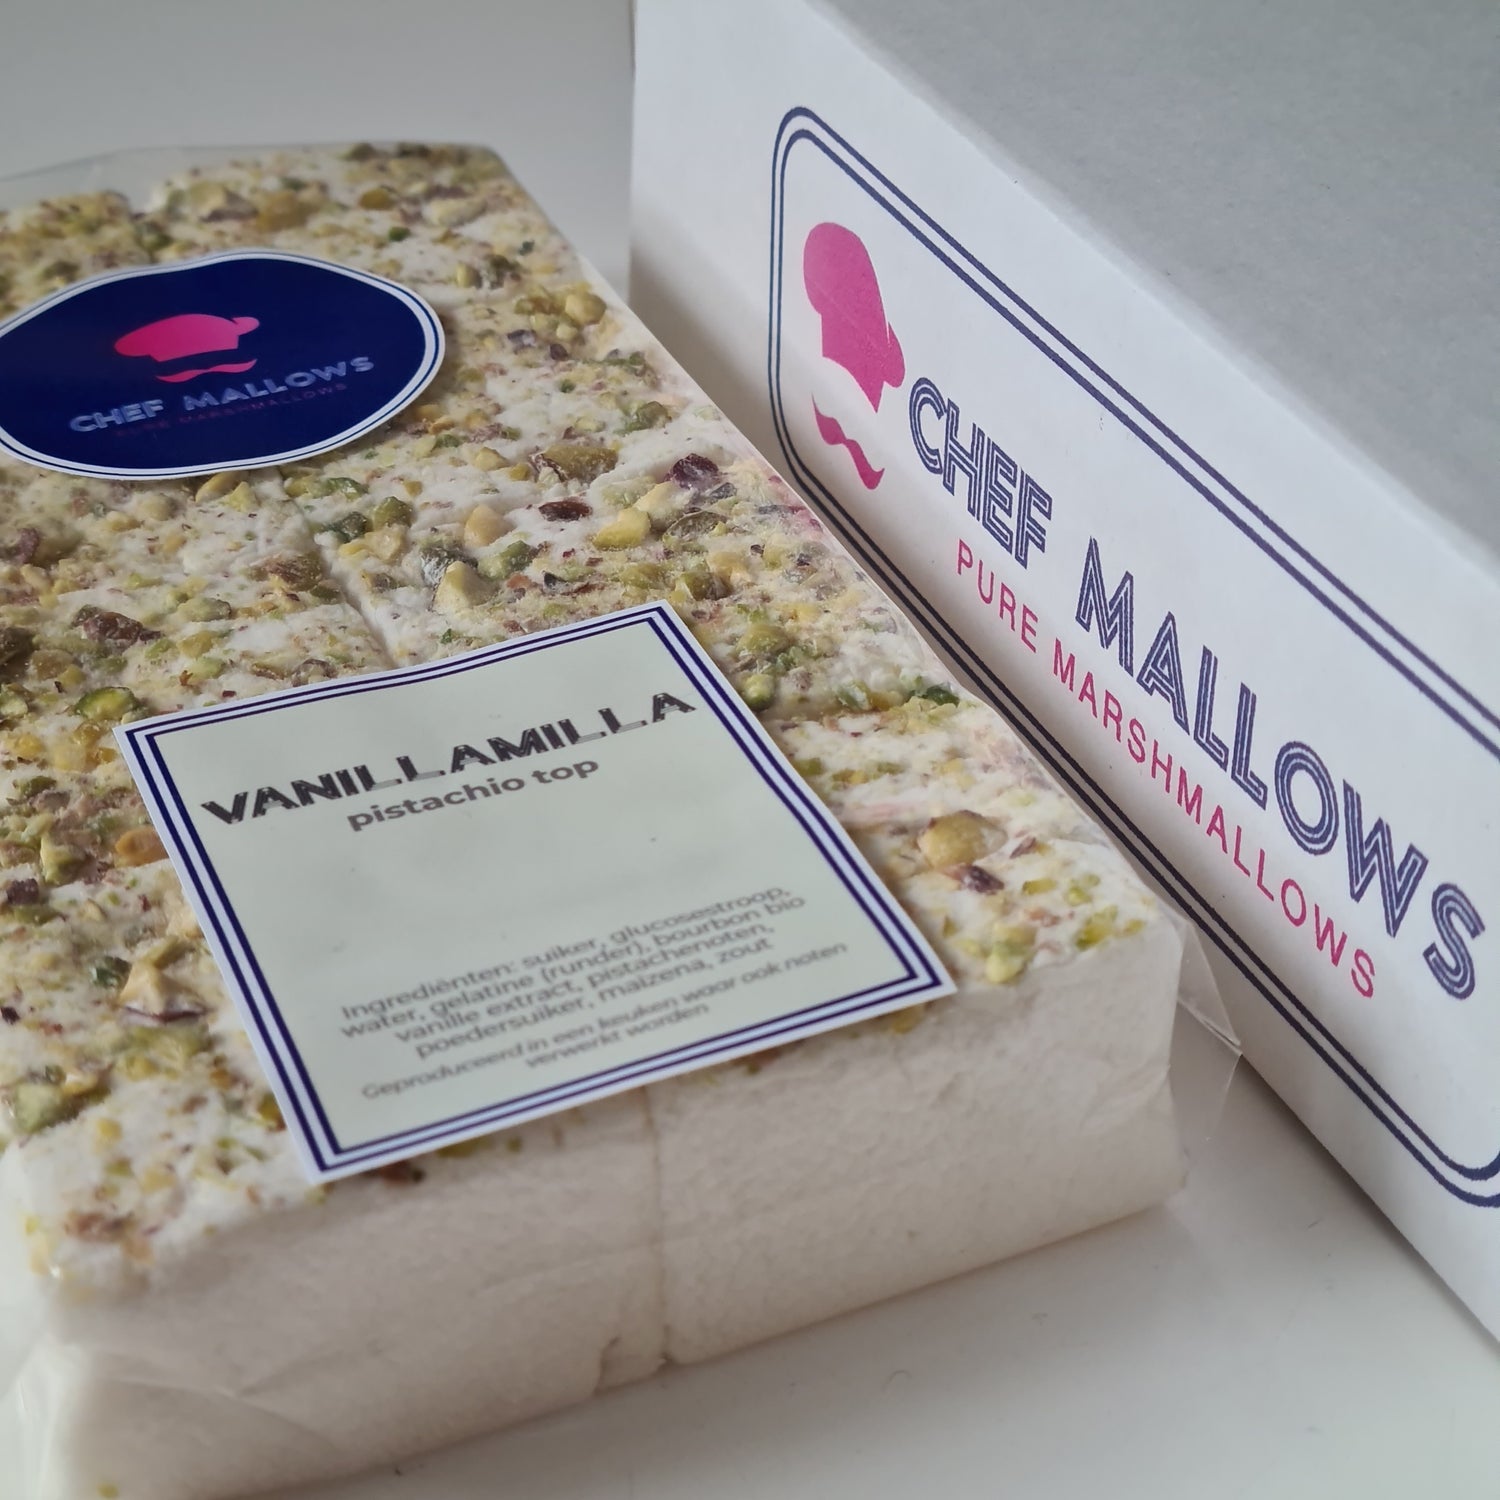 Verpakking van 8 vanille mallows met pistache